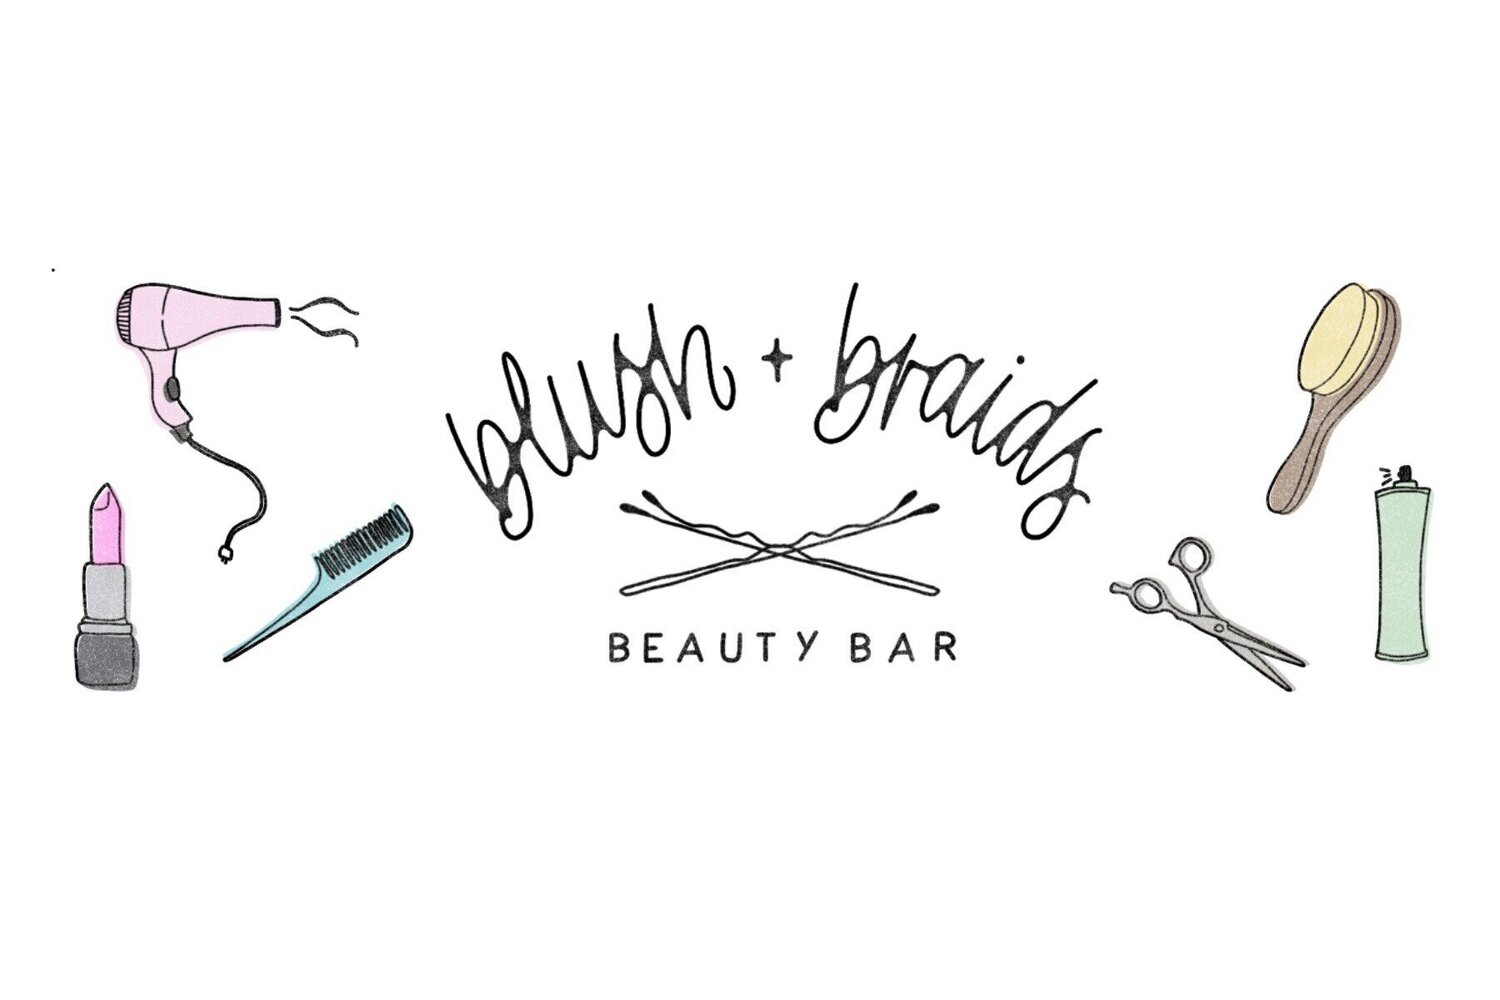 Blush and Braids Beauty Bar